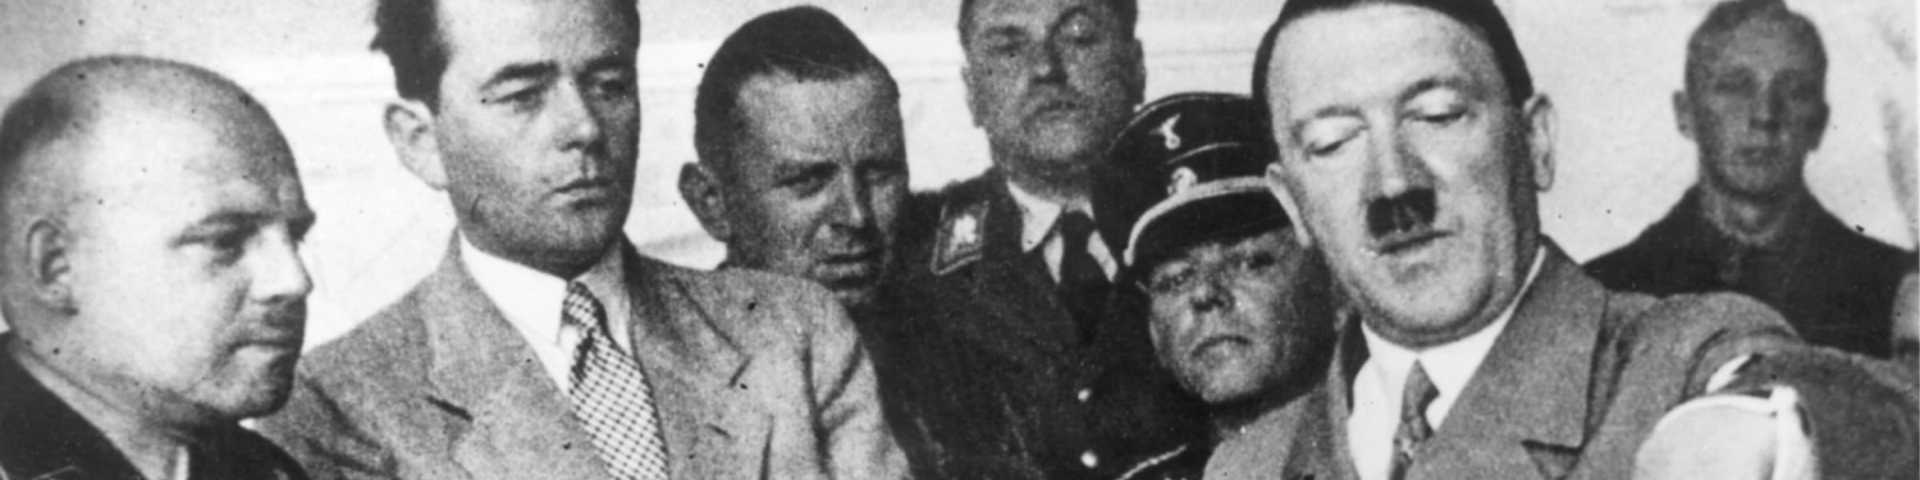 Авети другог светског рата: Алберт Шпер, нацистички вођа који је победио у Другом светском рату